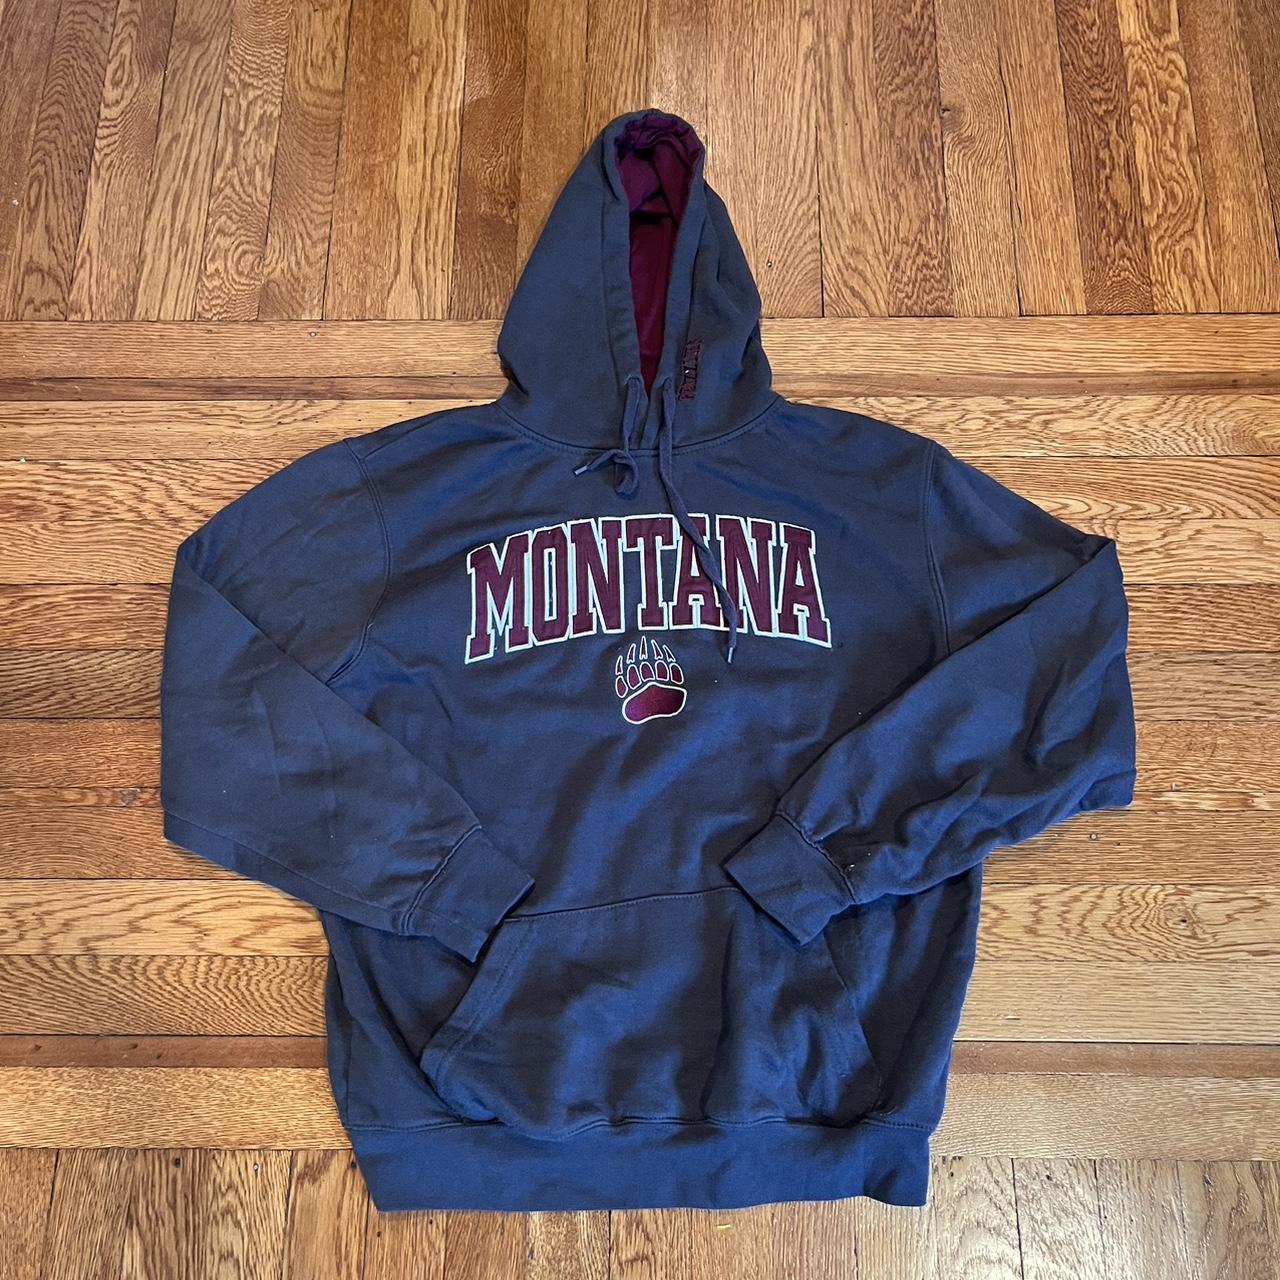 Montana hoodie - Depop